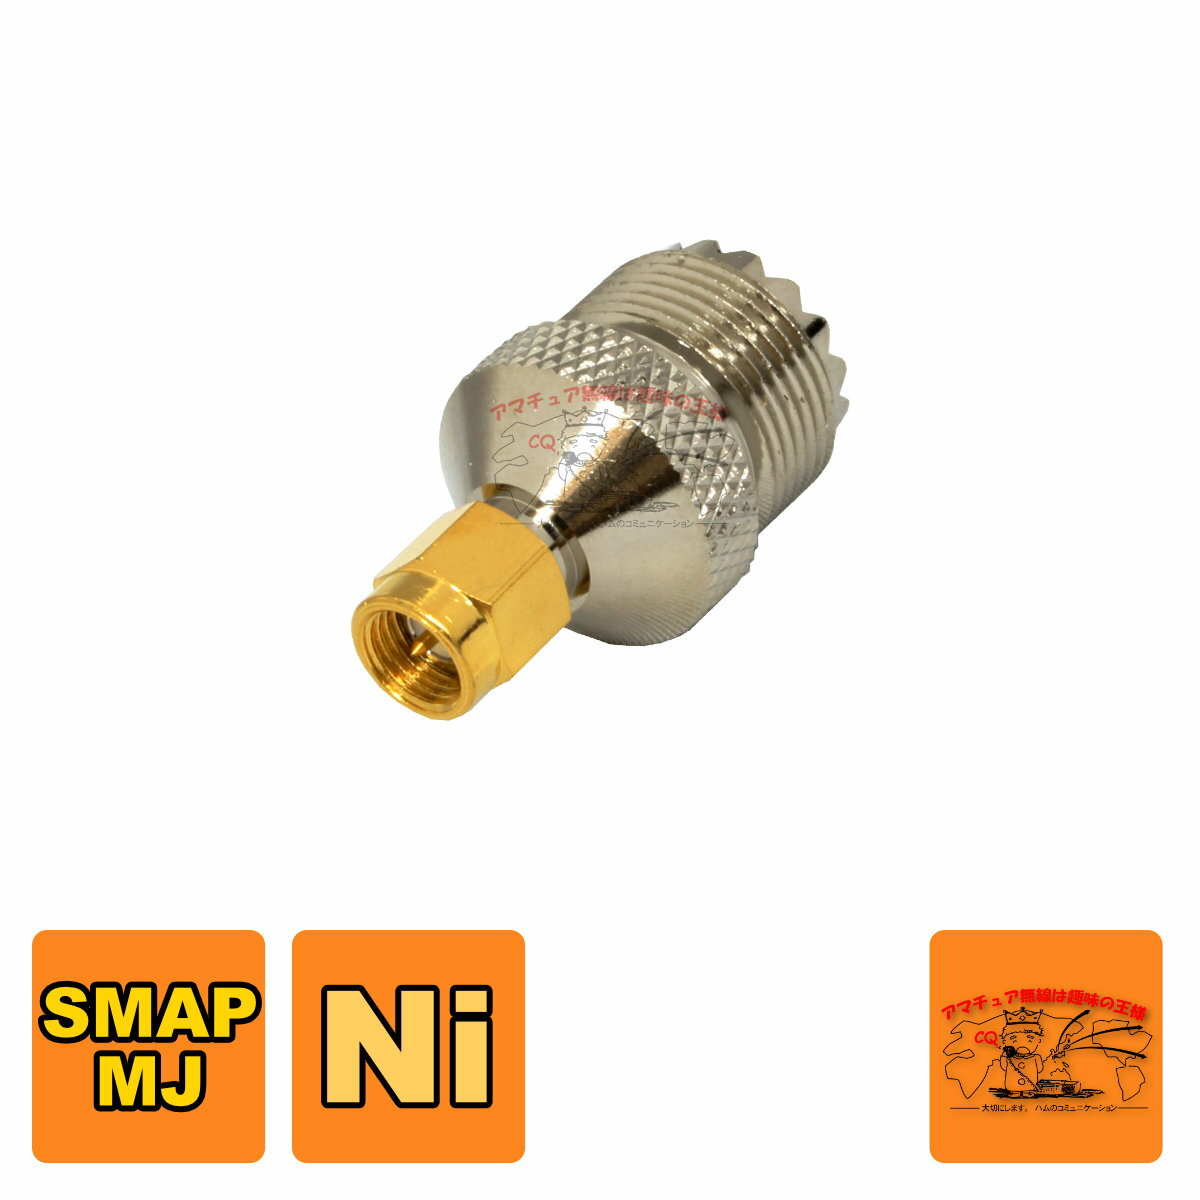 変換コネクター SMA-JコネクターのトランシーバーにM-P型コネクターを接続する場合に使用します。